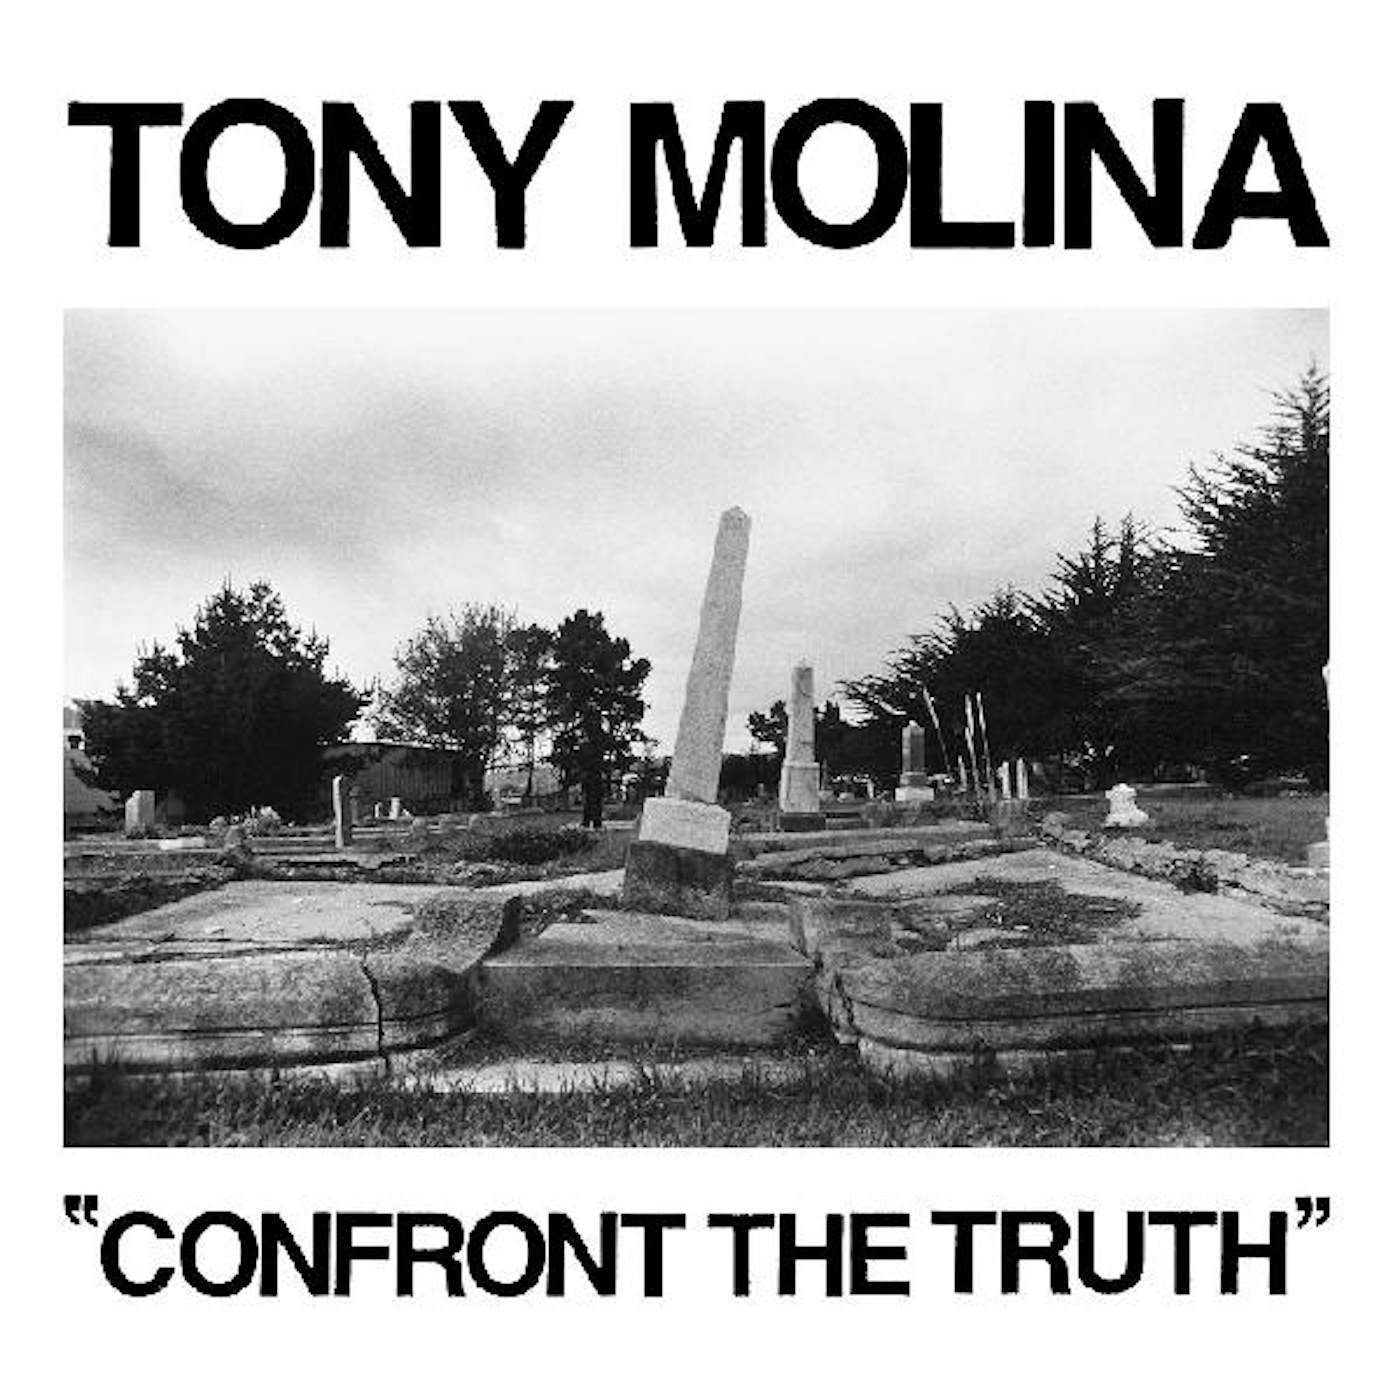 Tony Molina Confront the Truth Vinyl Record